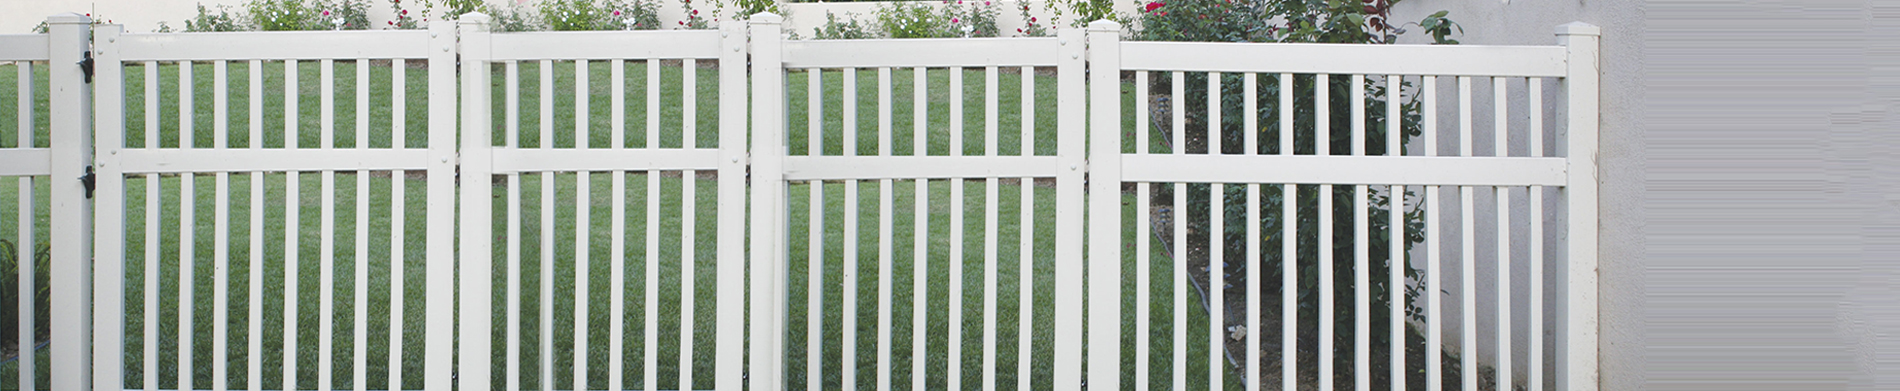 benefits of installing dog fence